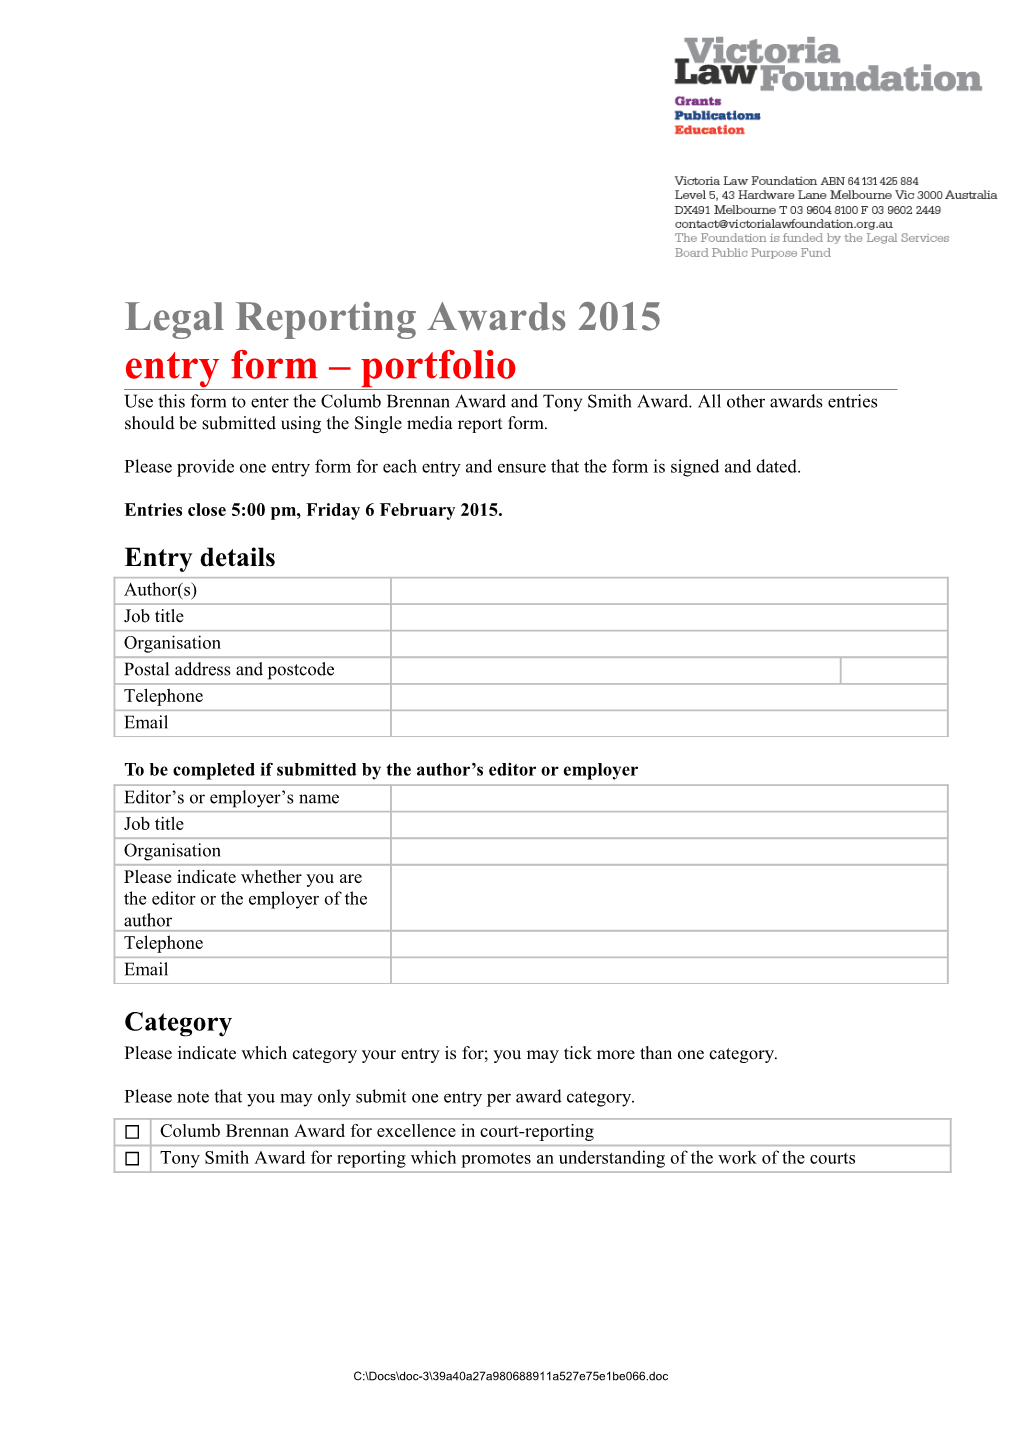 Legal Reporting Awards 2015